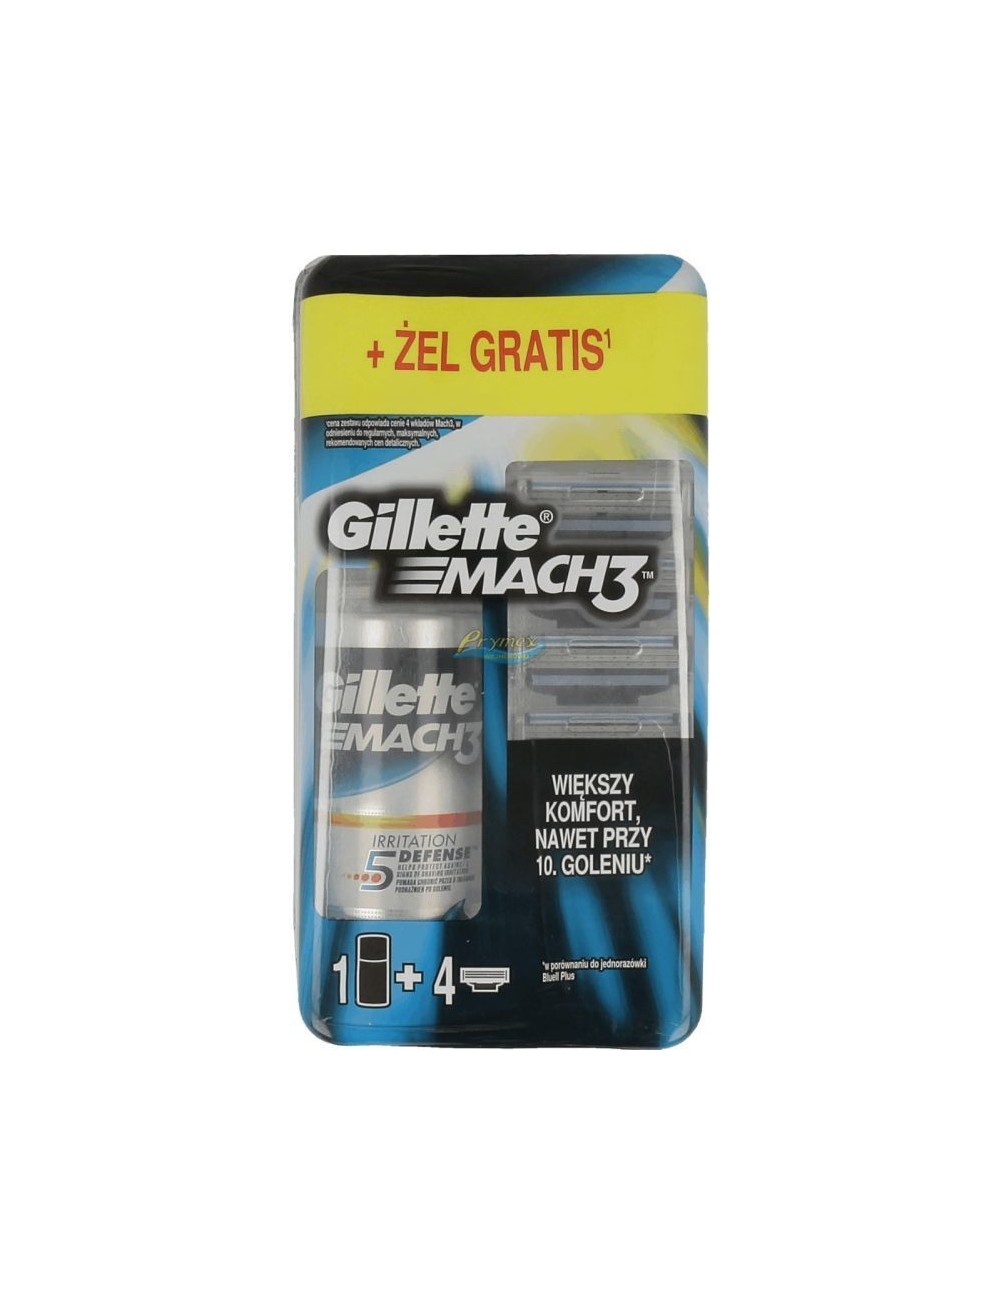 Gillette Mach 3 Zestaw Wymienne Wkłady do Maszynki dla Mężczyzn 4 szt + Gratis Żel do Golenia Gillette 75 ml